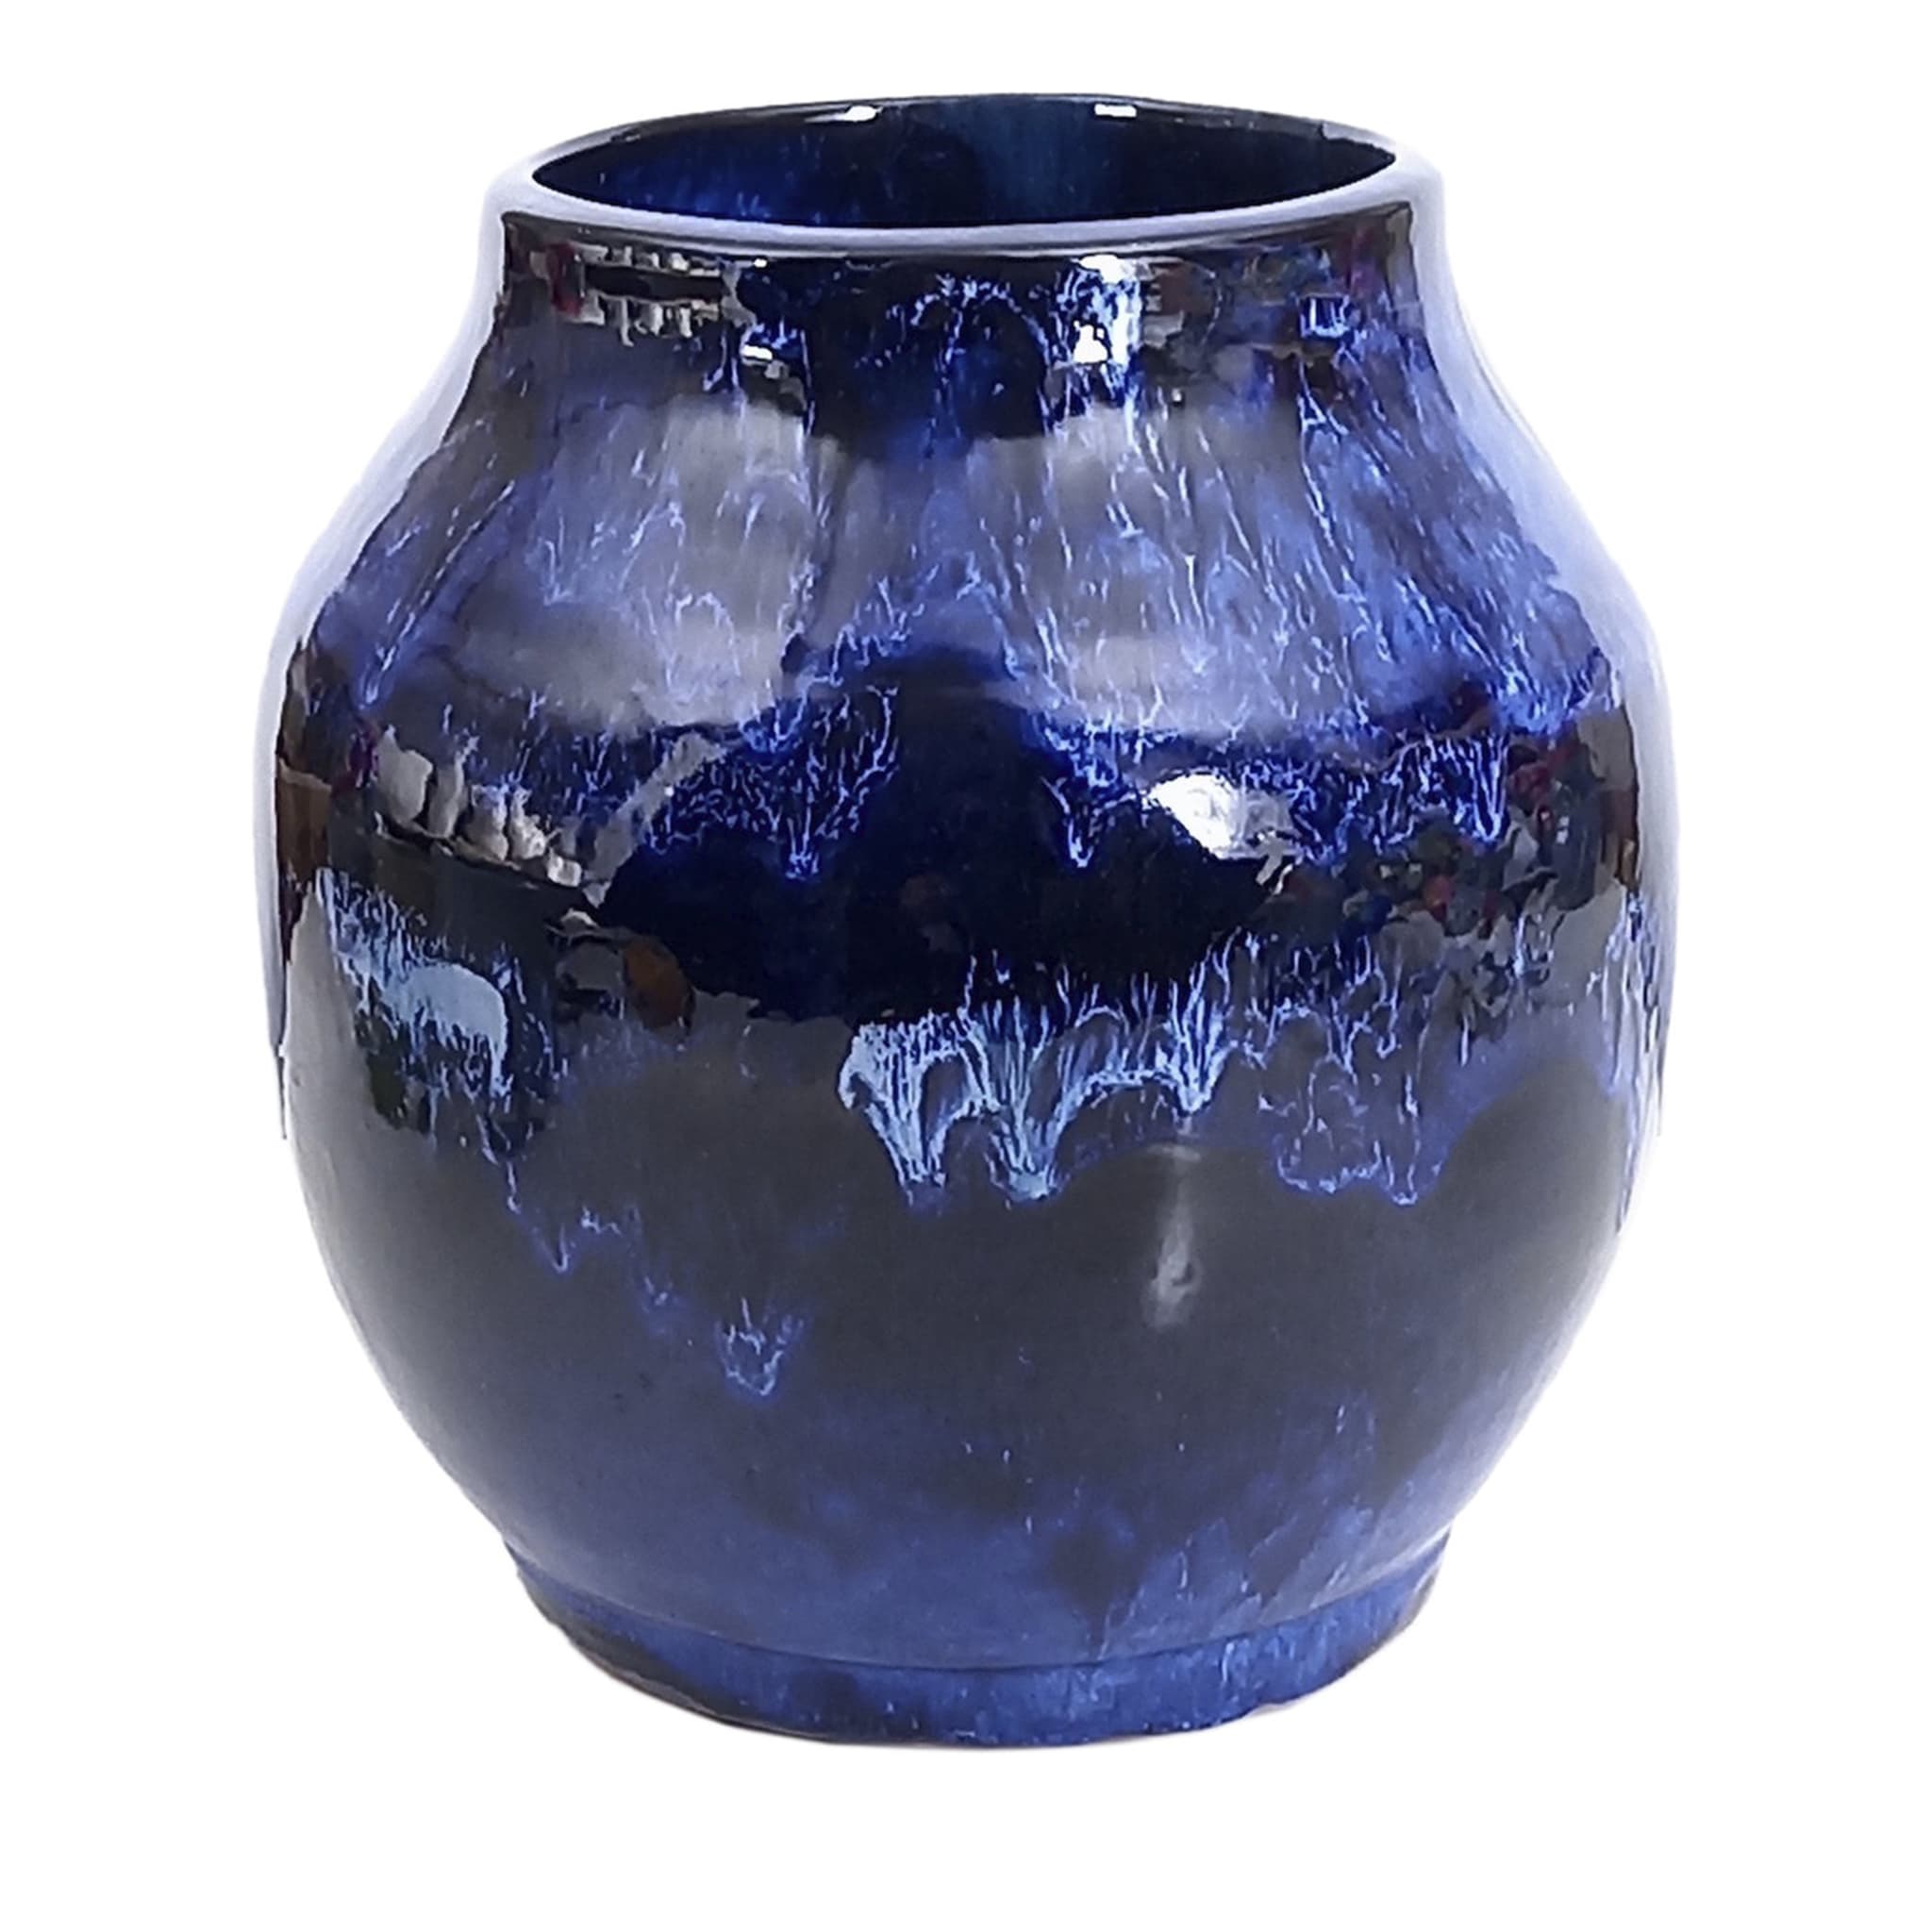 Schwarz 'n' Blaue Vase - Hauptansicht